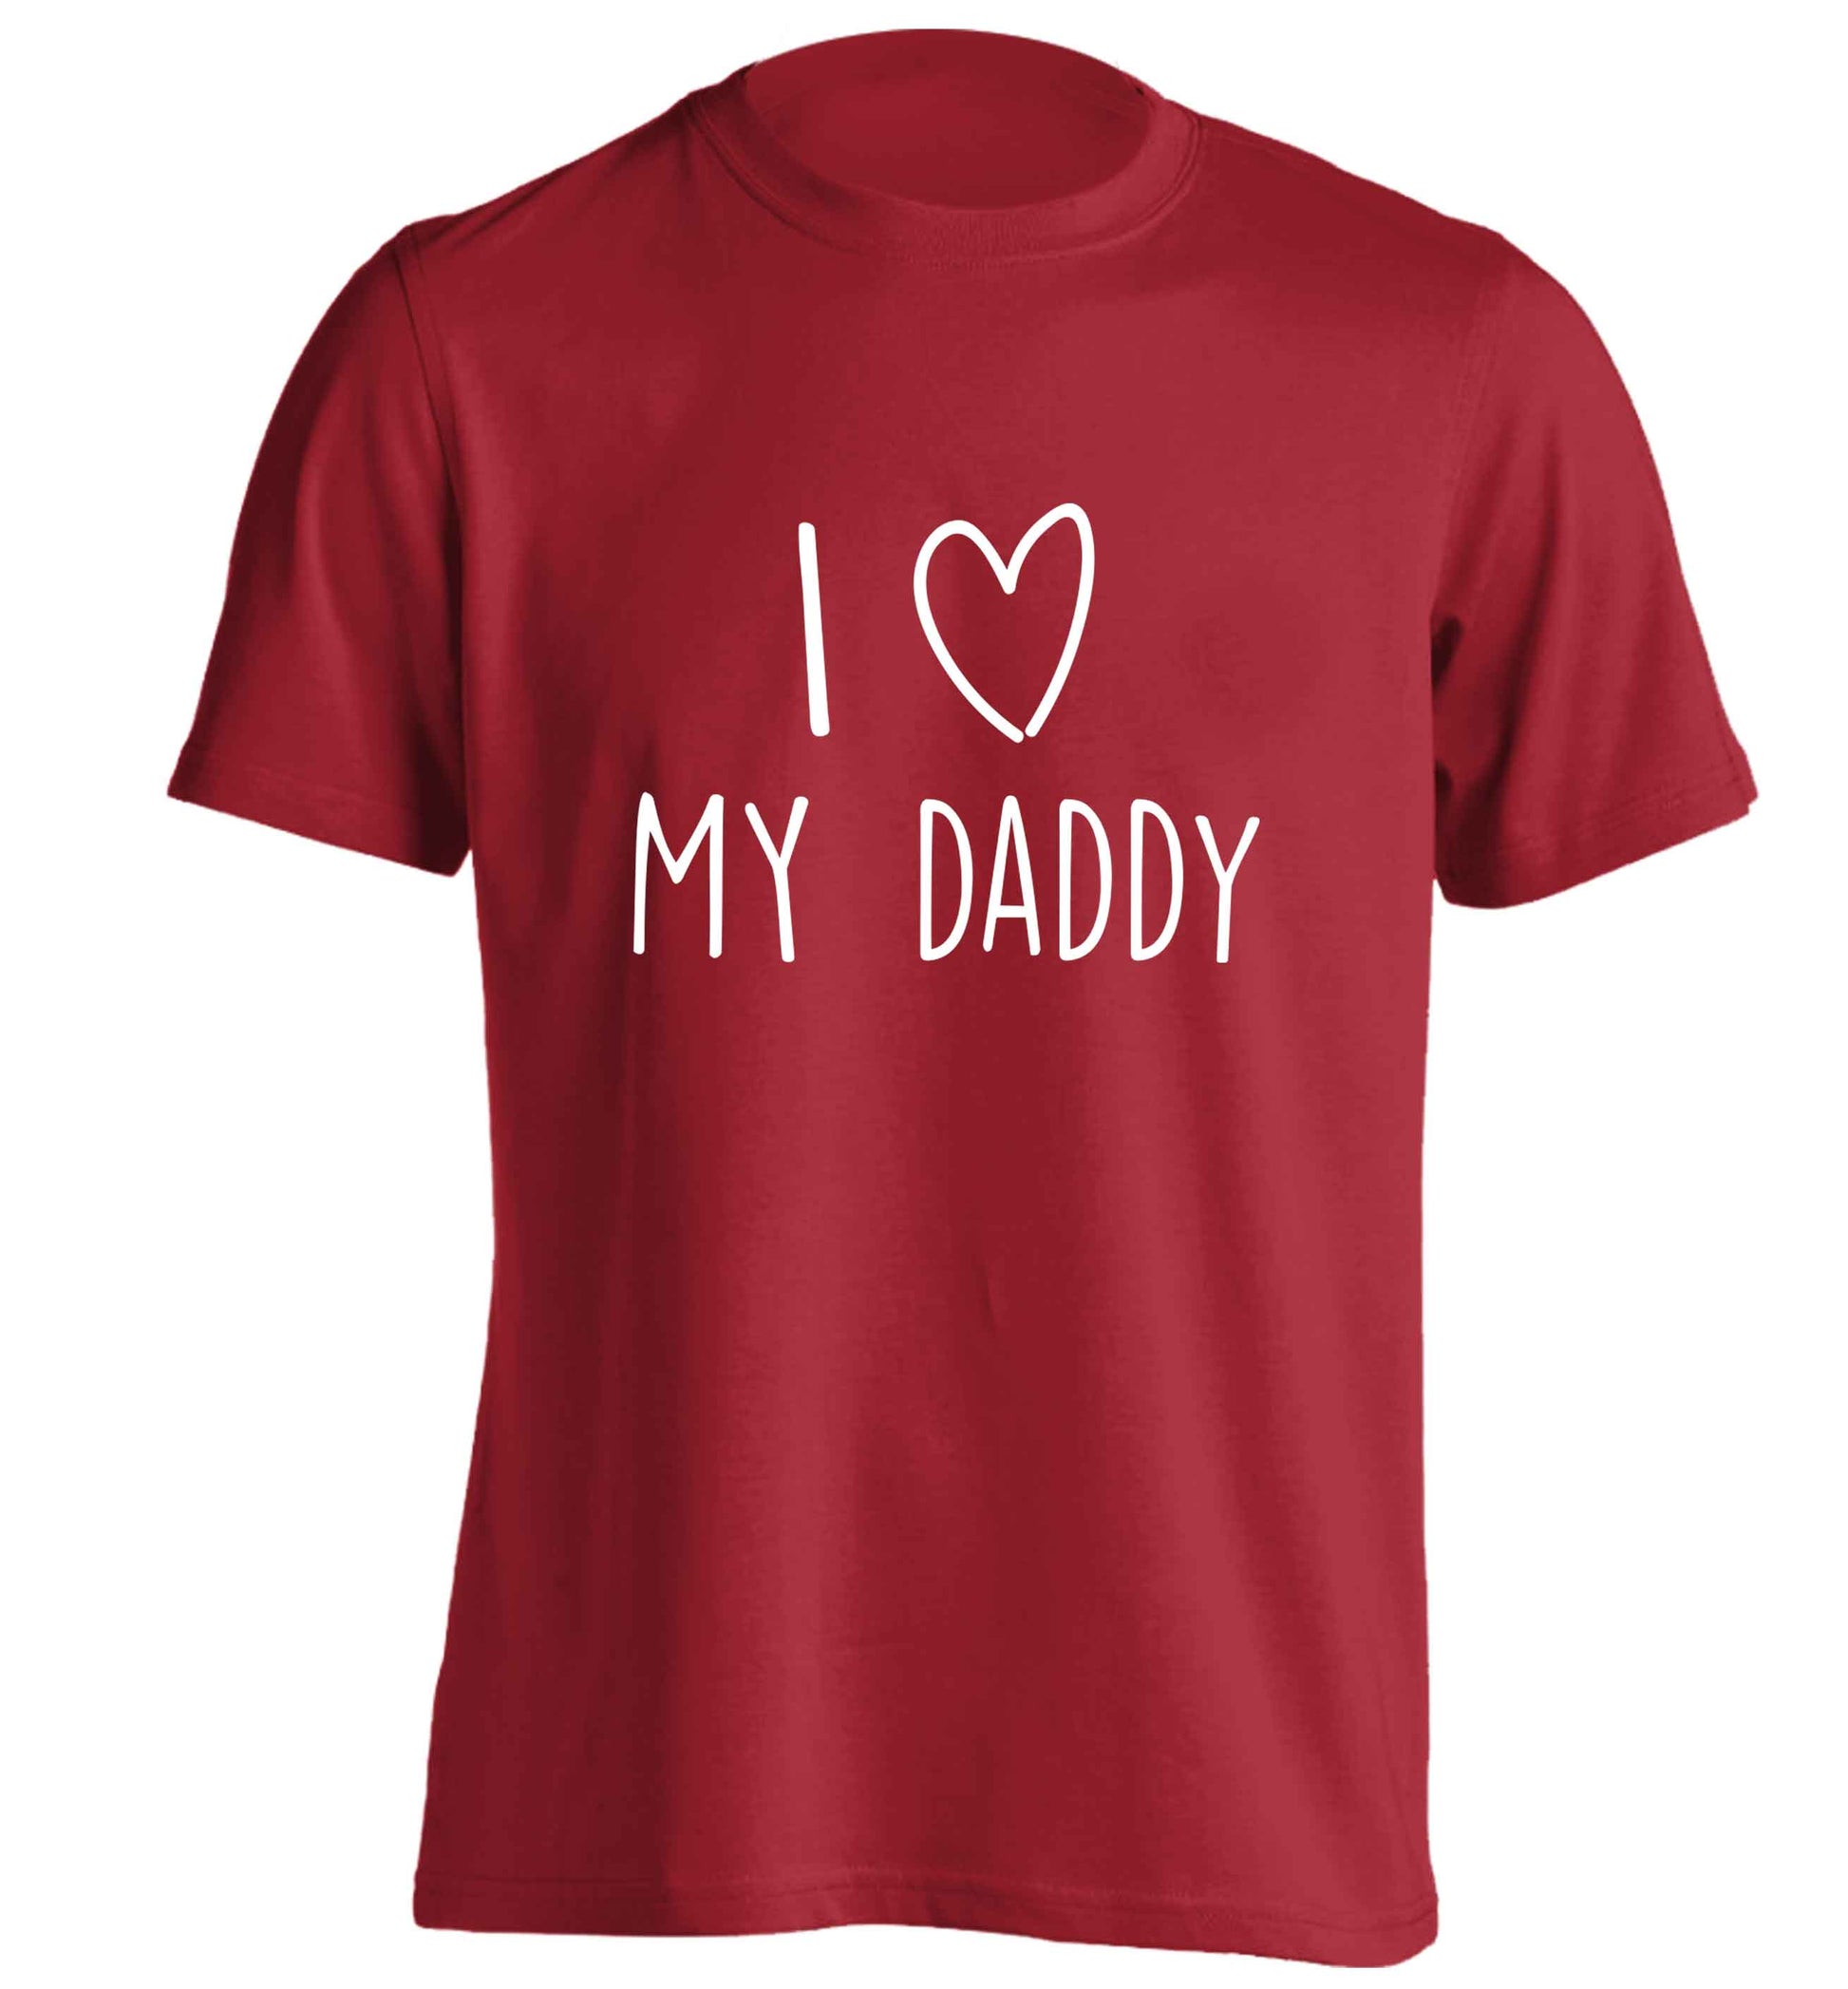 I love my daddy adults unisex red Tshirt 2XL